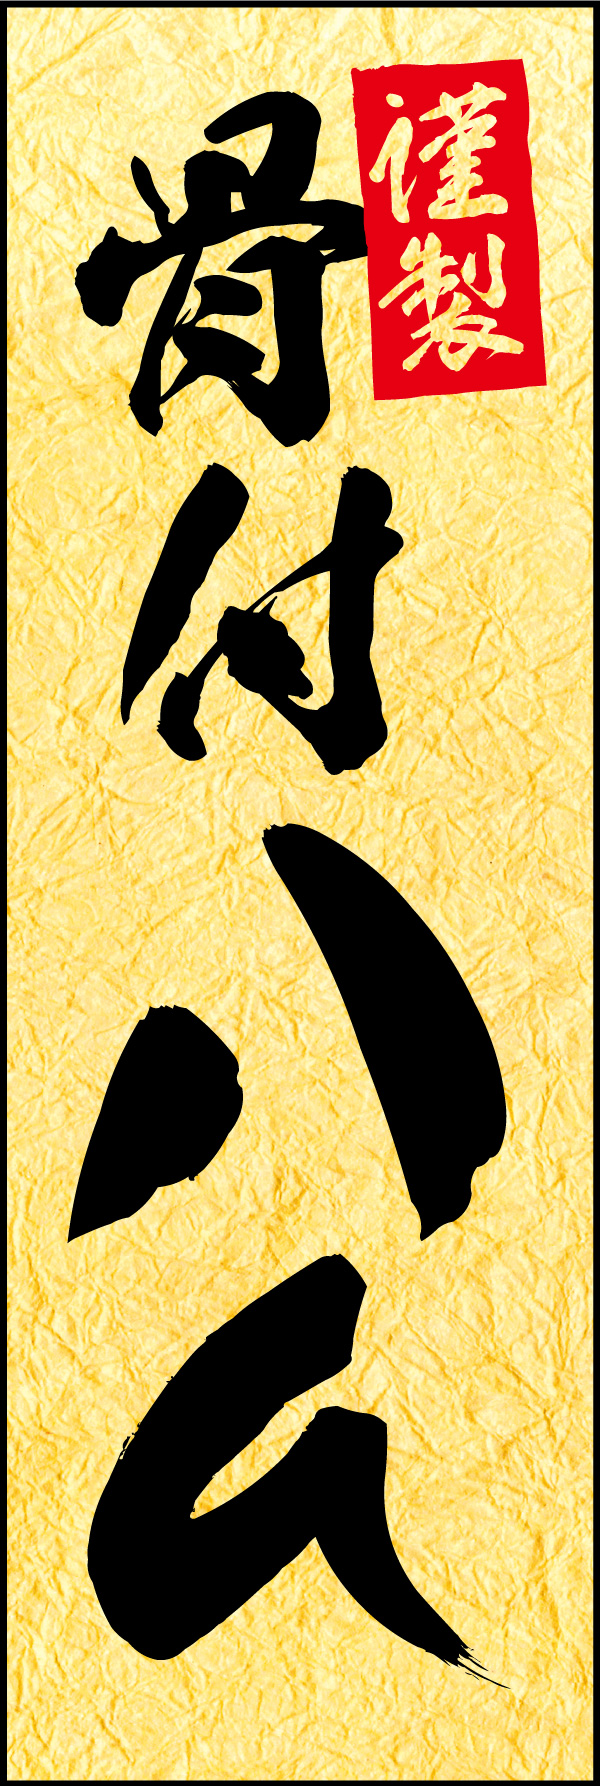 骨付きハム 01「骨付きハム」ののぼりです。お中元・お歳暮や、贈答品に相応しい品格のある商品をイメージしたデザインにしました。(Y.M) 